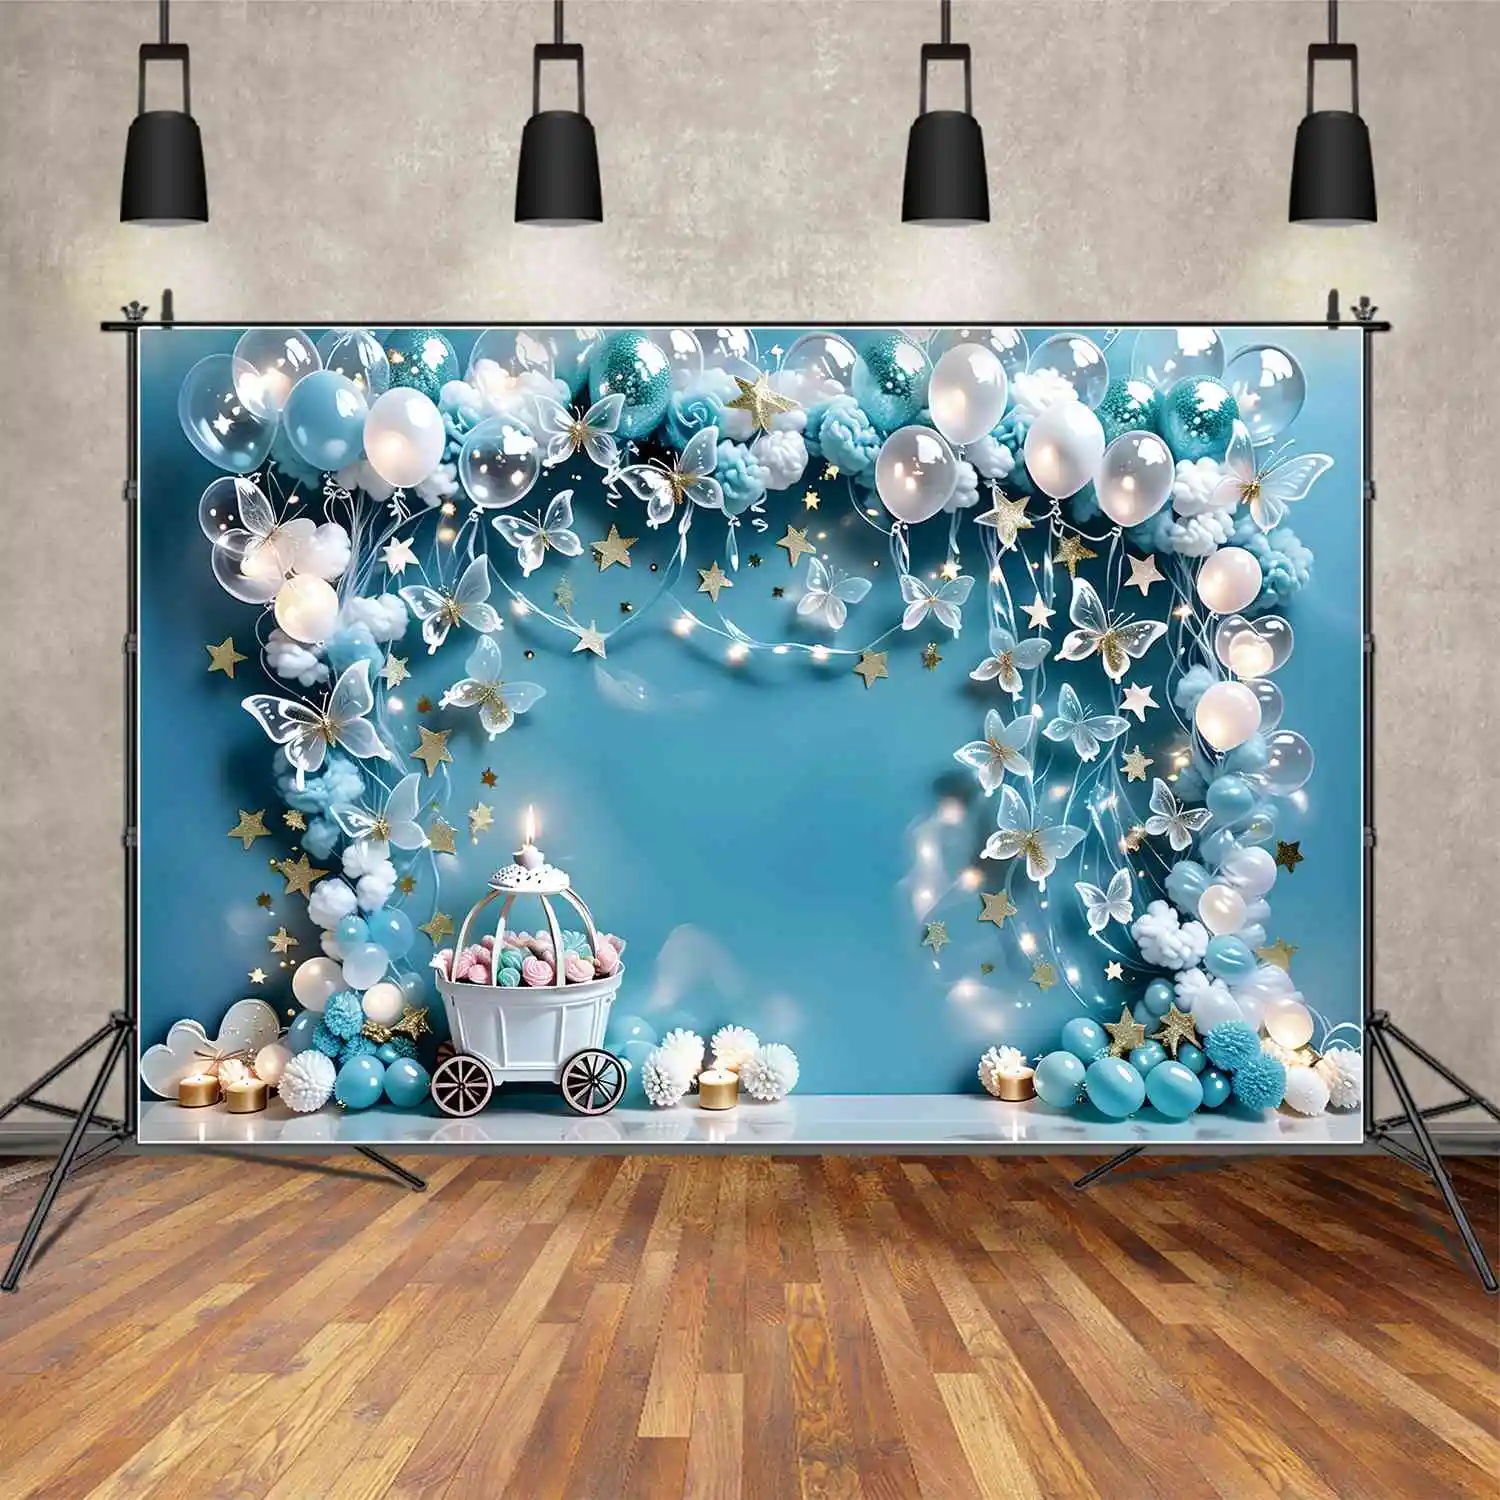 

Фон MOON.QG для детского дня рождения с изображением бабочки воздушных шаров для мальчиков конфет корзины звёзд гирлянды синего цвета реквизит для фотосъемки